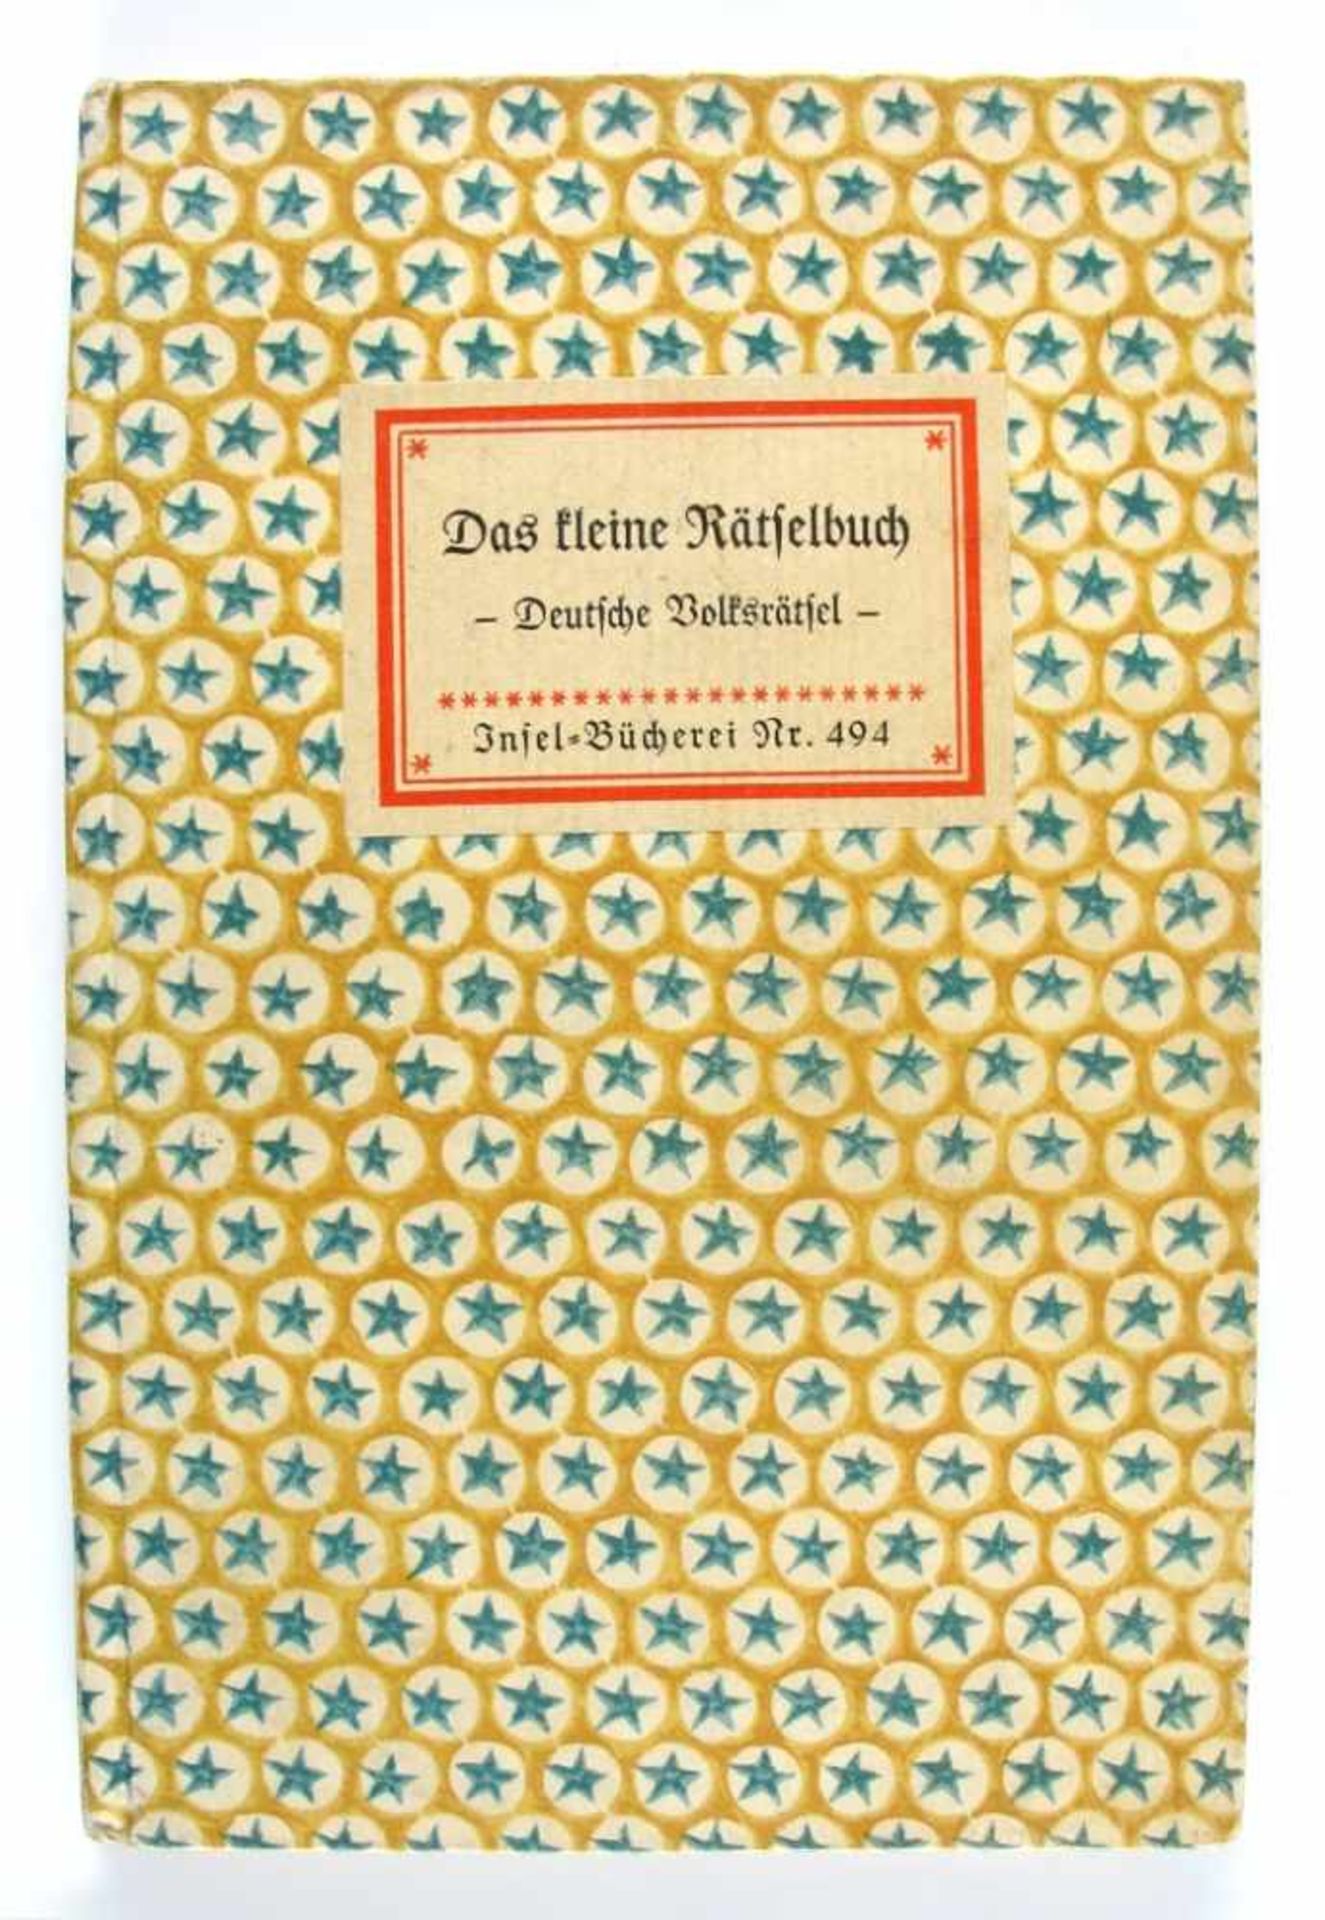 Insel-Bücherei Nr. 494. Das kleine Rätselbuch. Deutsche Volksrätsel. Insel-Verlag, Leipzig o.J. (